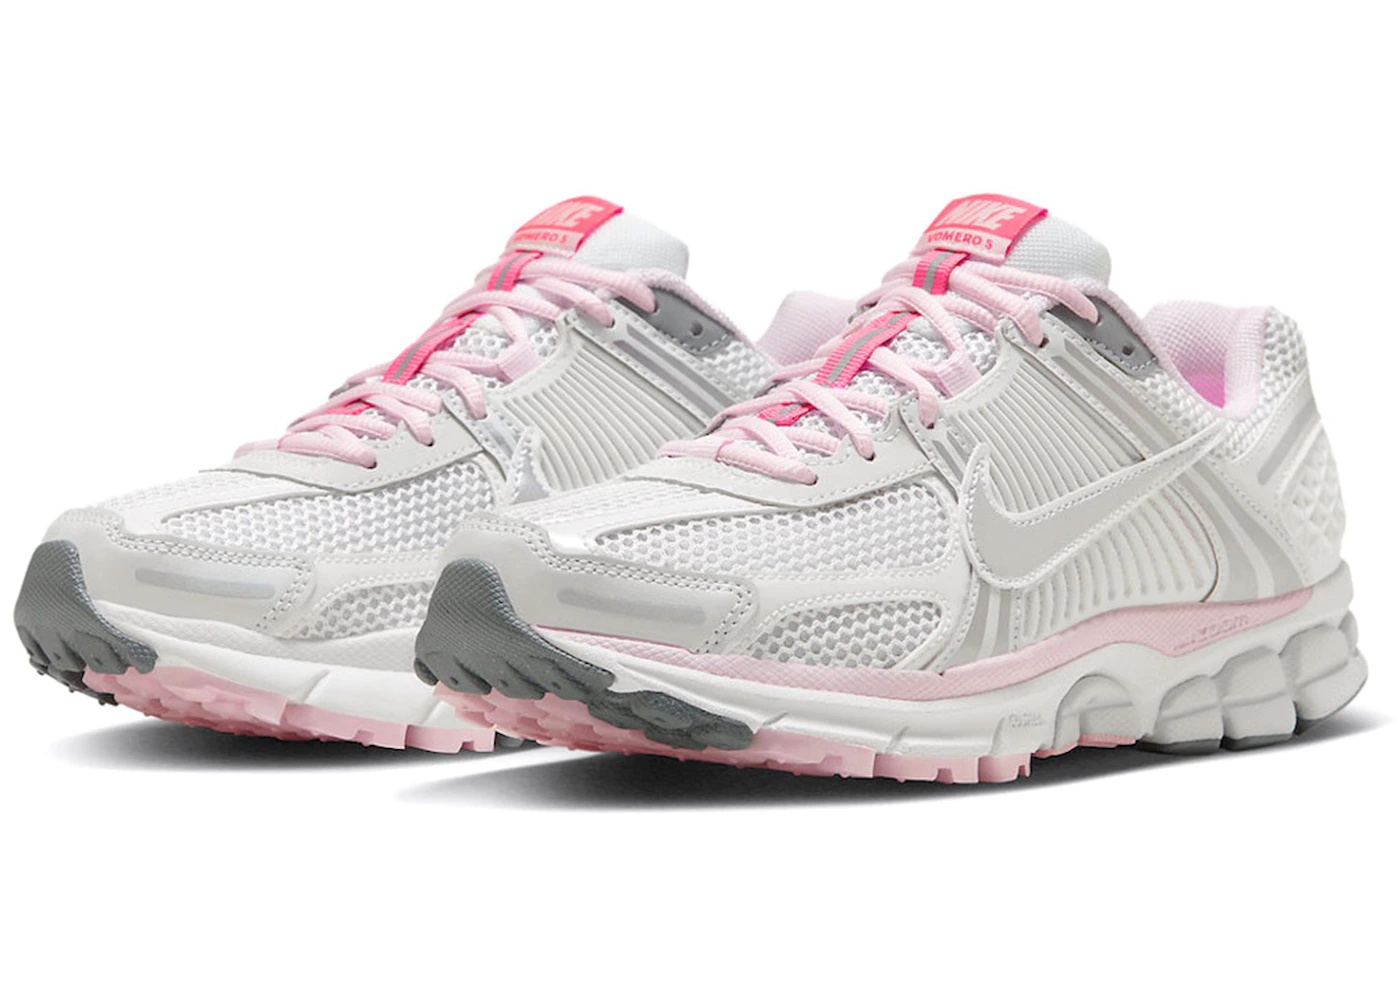 Nike Zoom Vomero 5 520 Pack White Pink (Women's) - 2